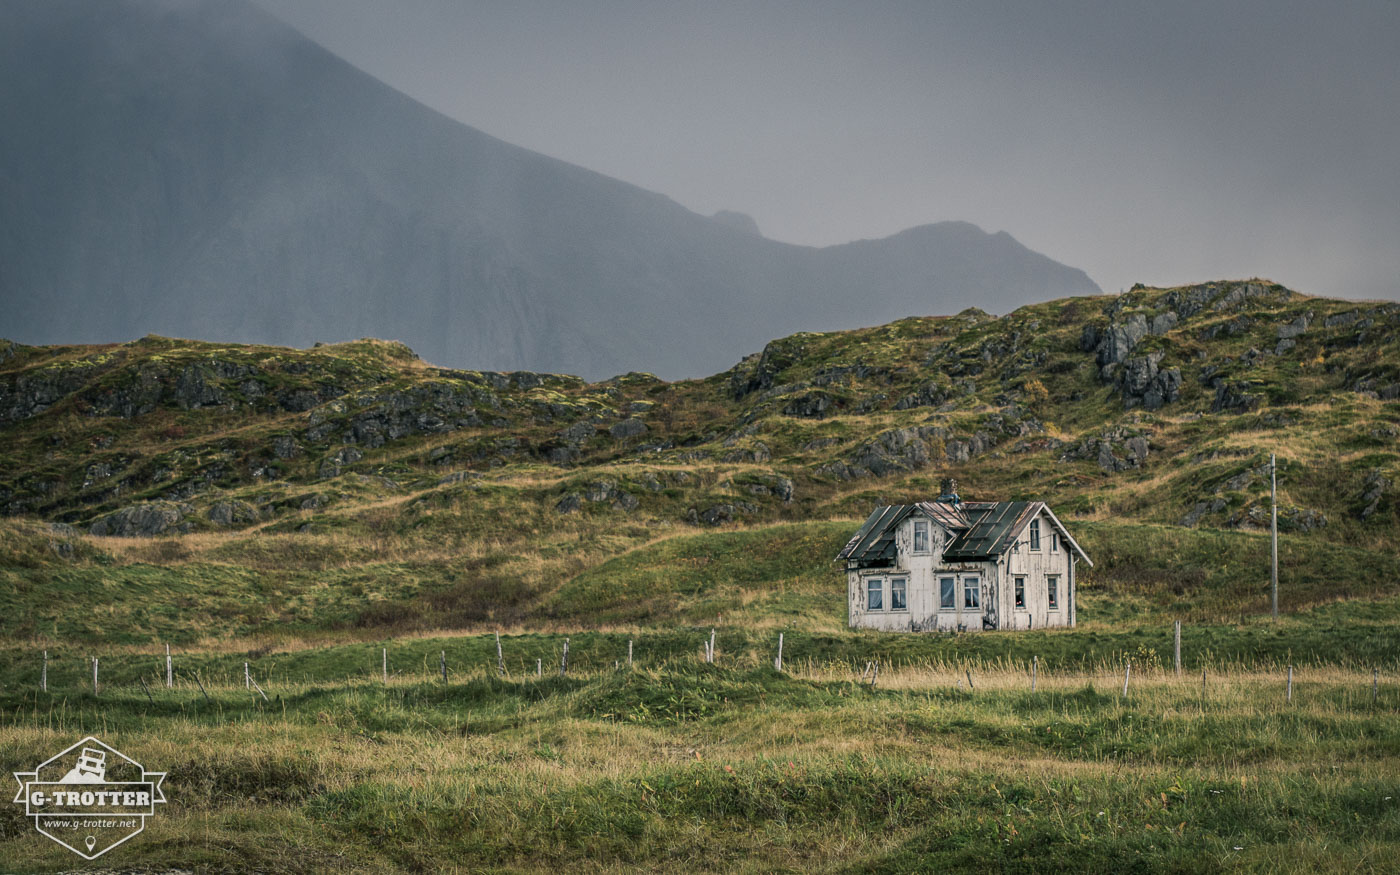 Bild 10 der Bildergalerie “4700 km durch Norwegen”